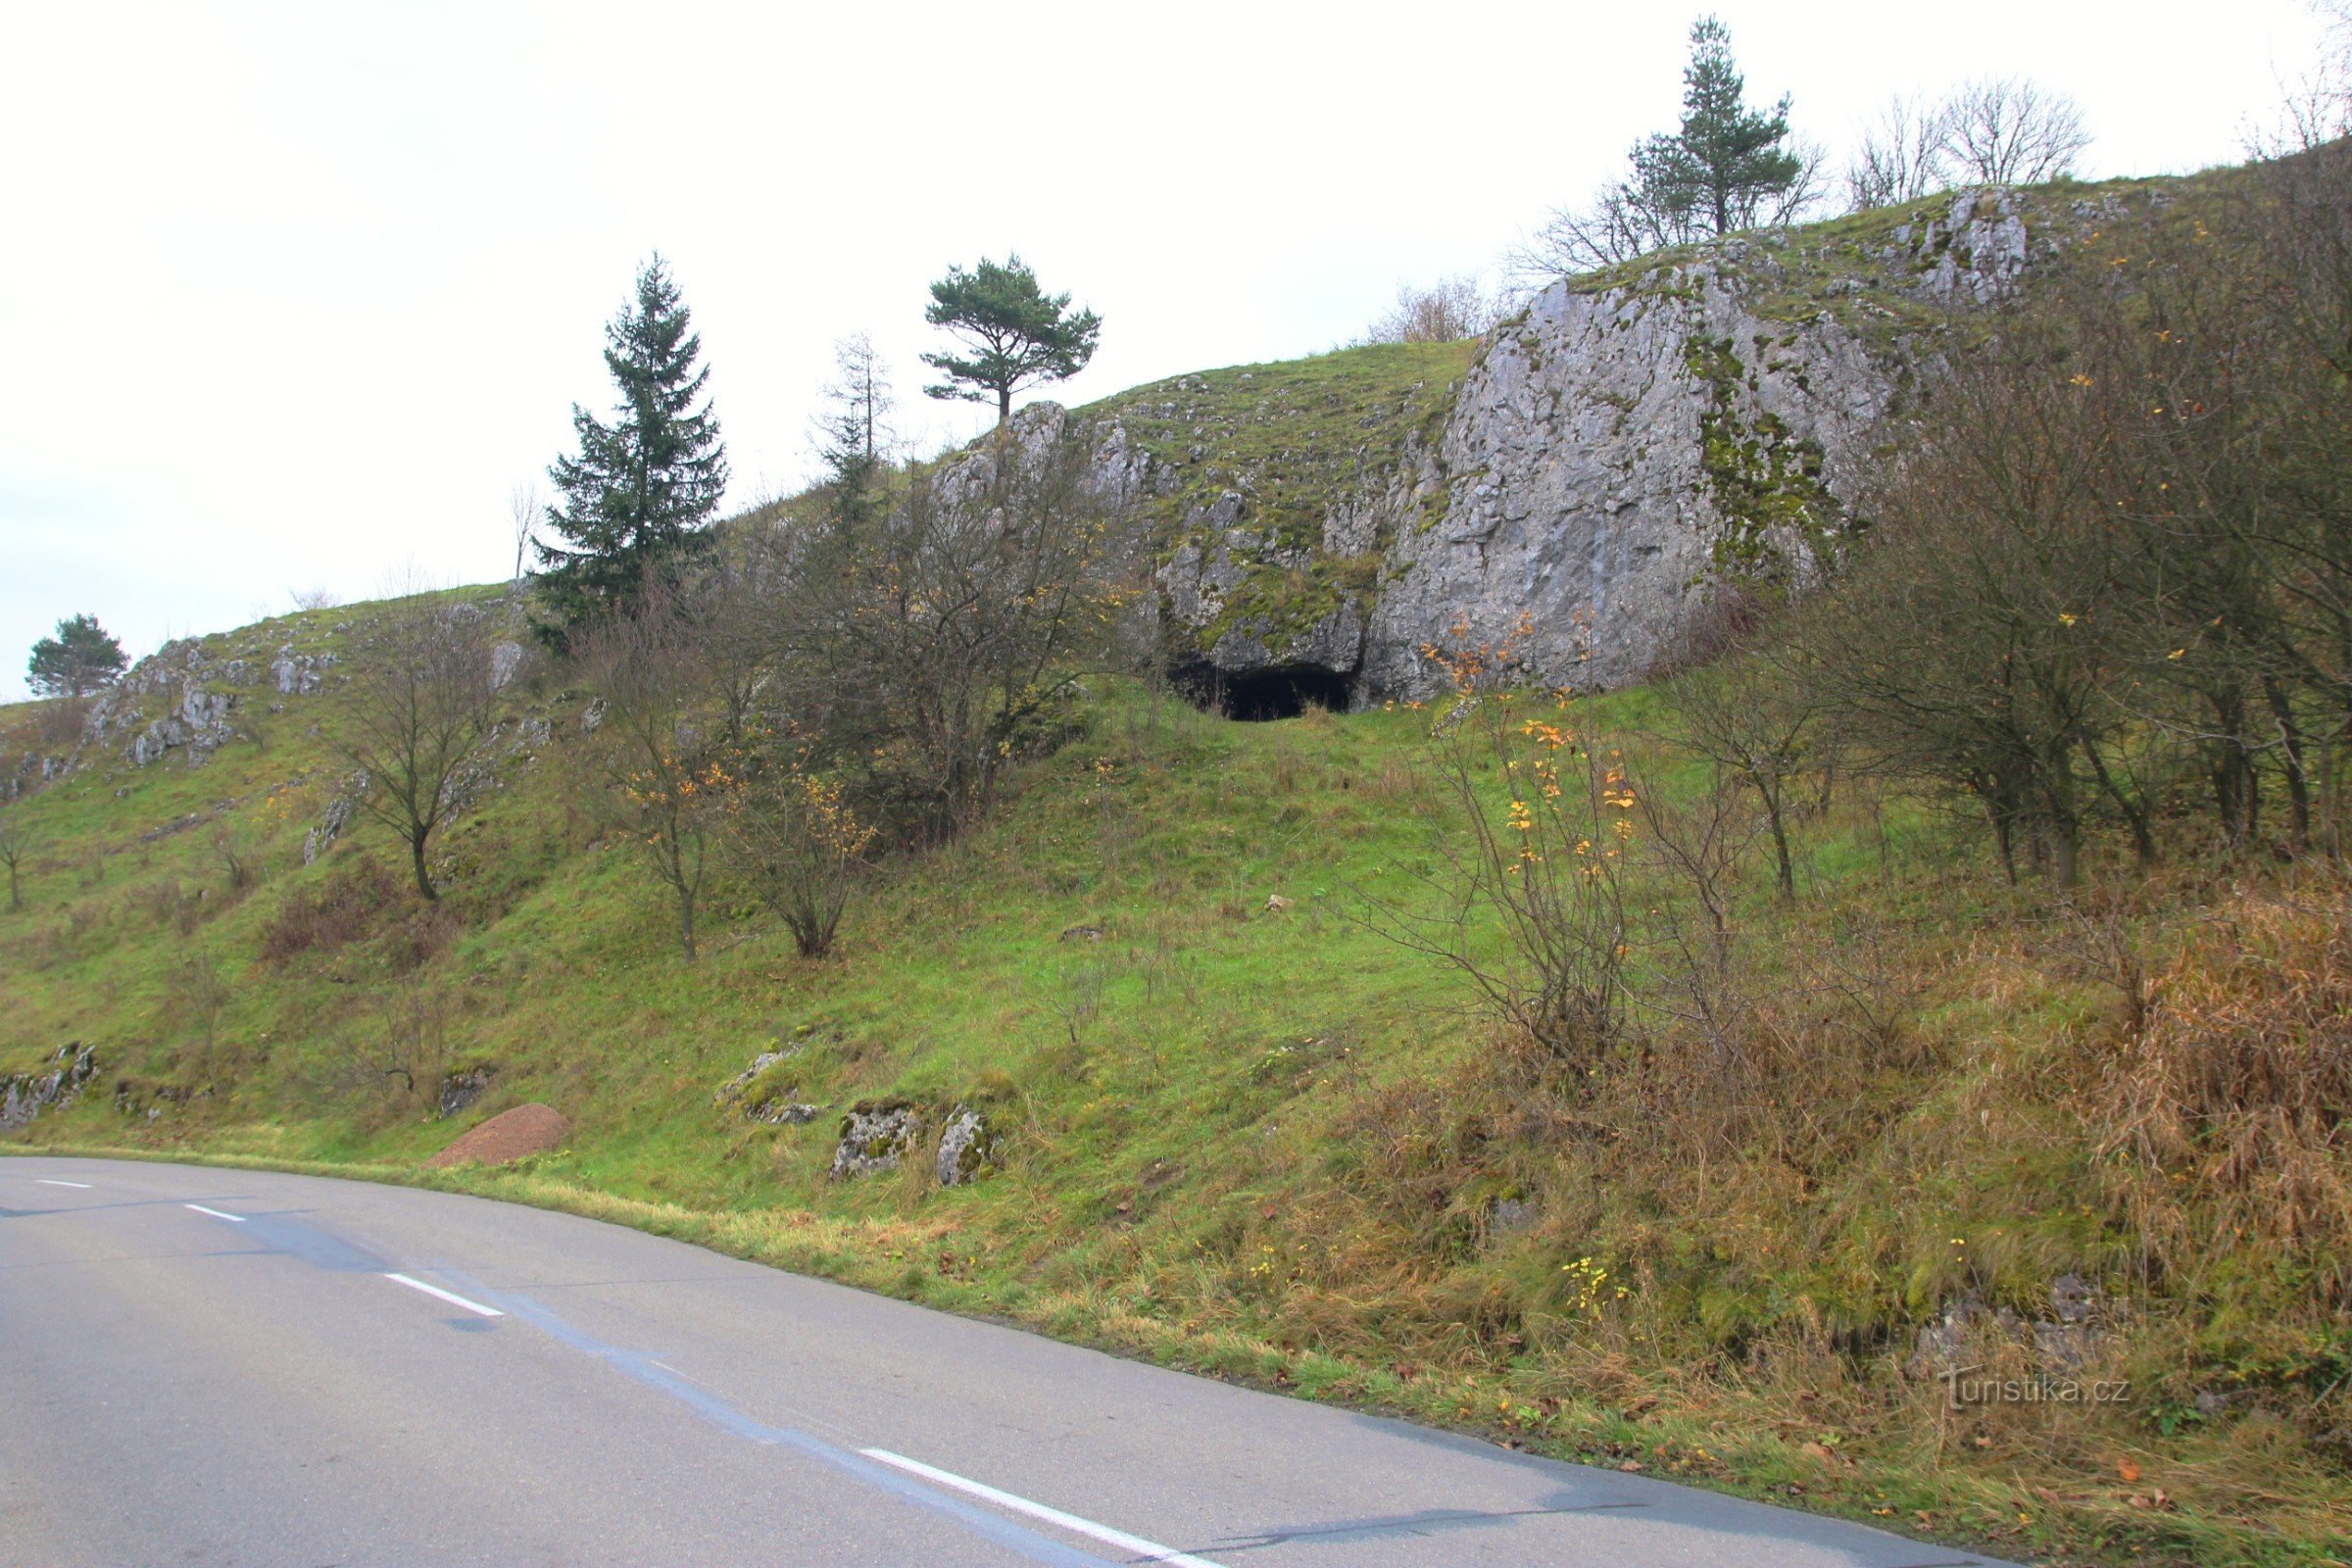 从路上很容易看到洞穴入口